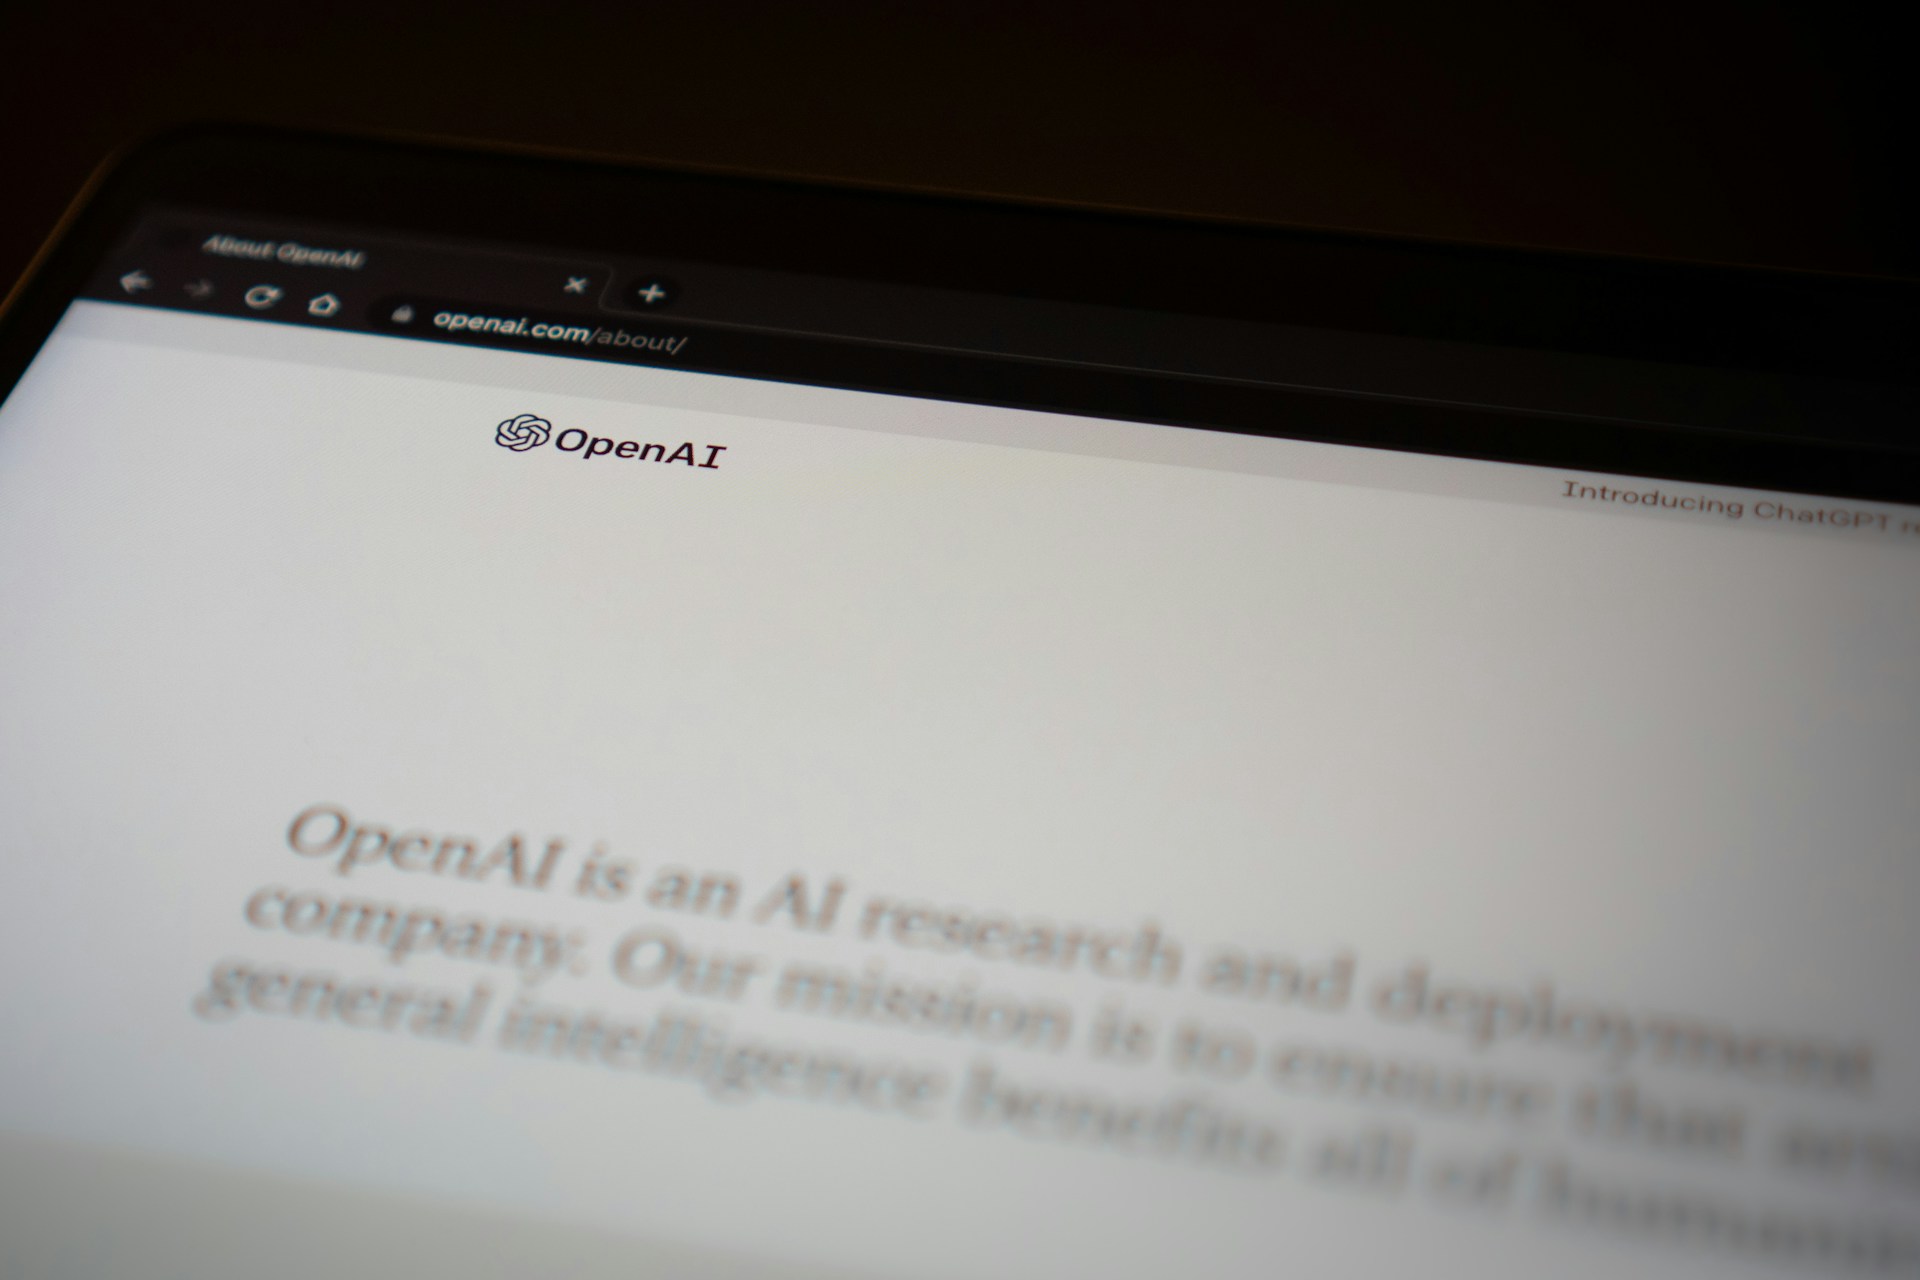 OpenAI firma un acuerdo estratégico con el Financial Times del Reino Unido, incluyendo el uso de contenido